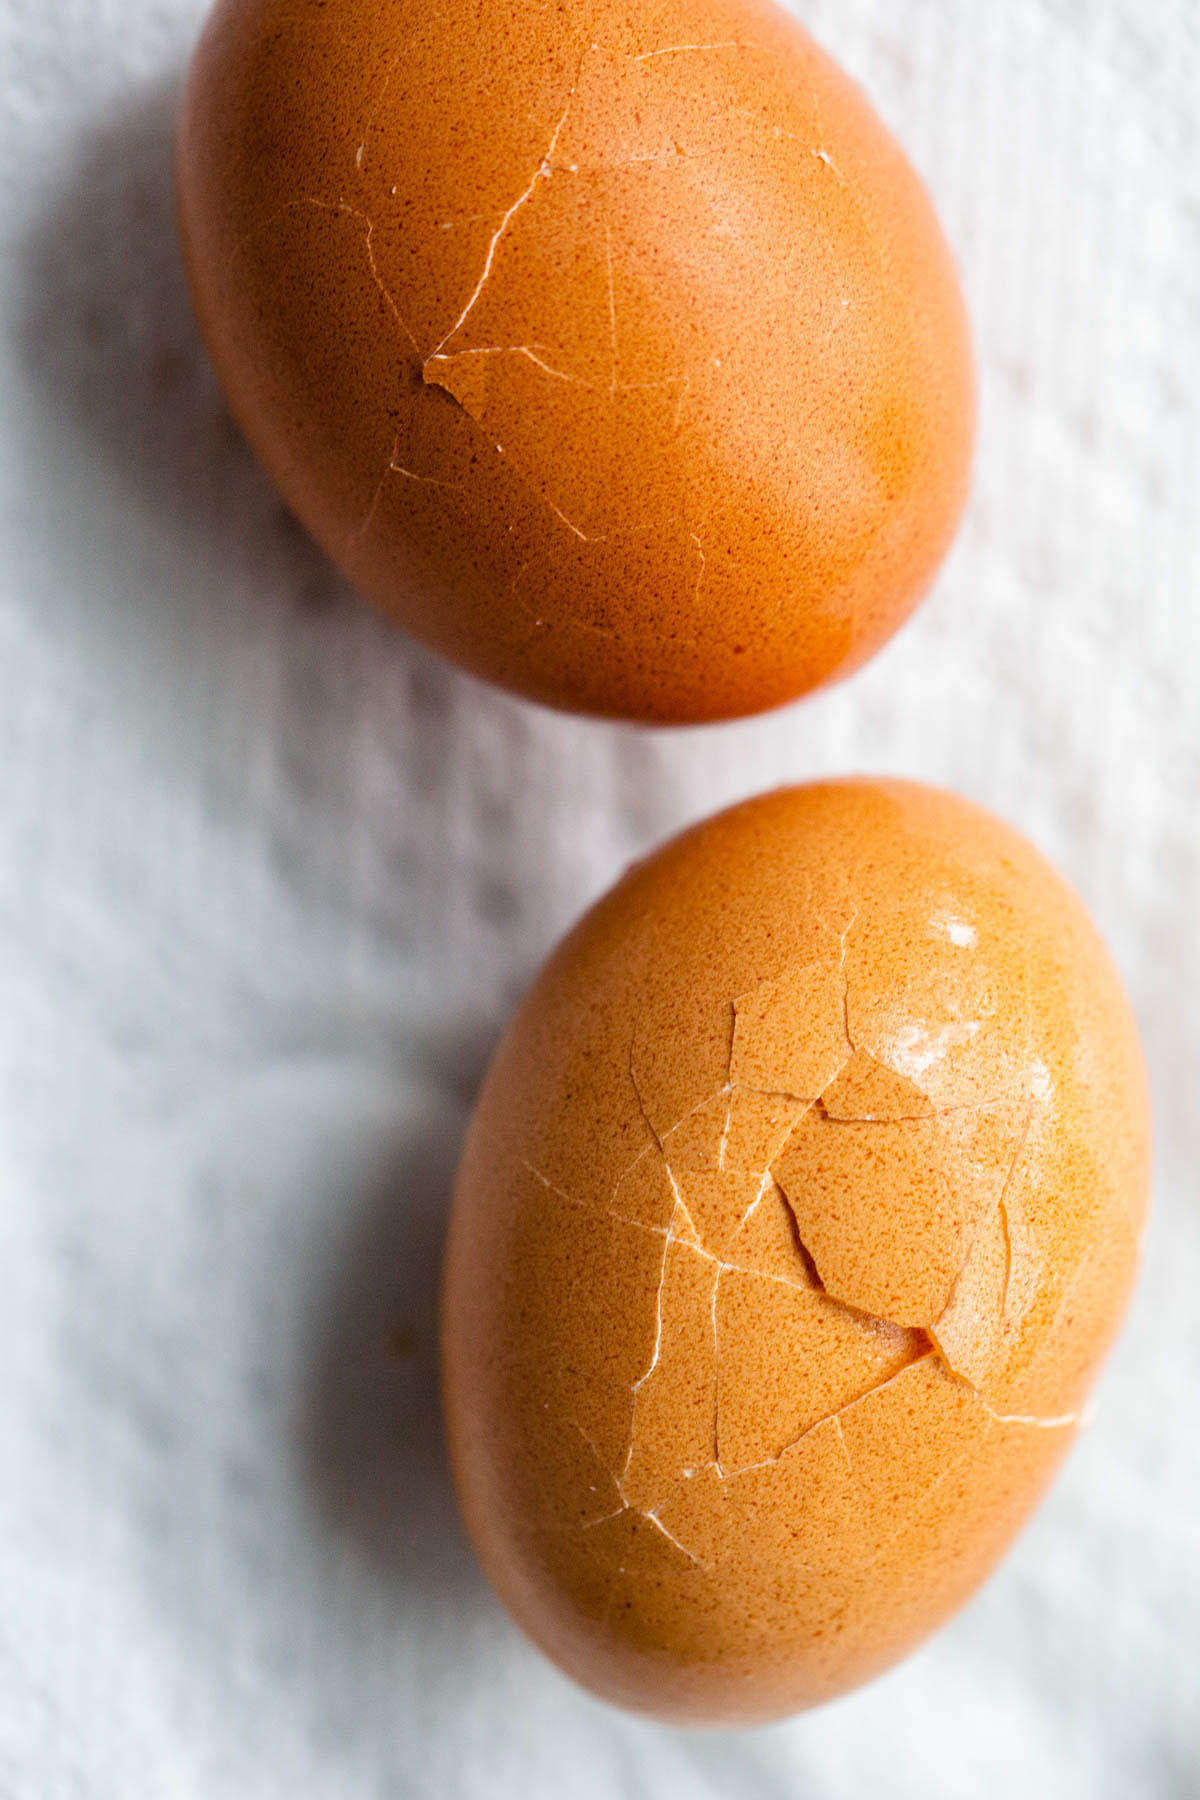 Cracked hard boiled eggs